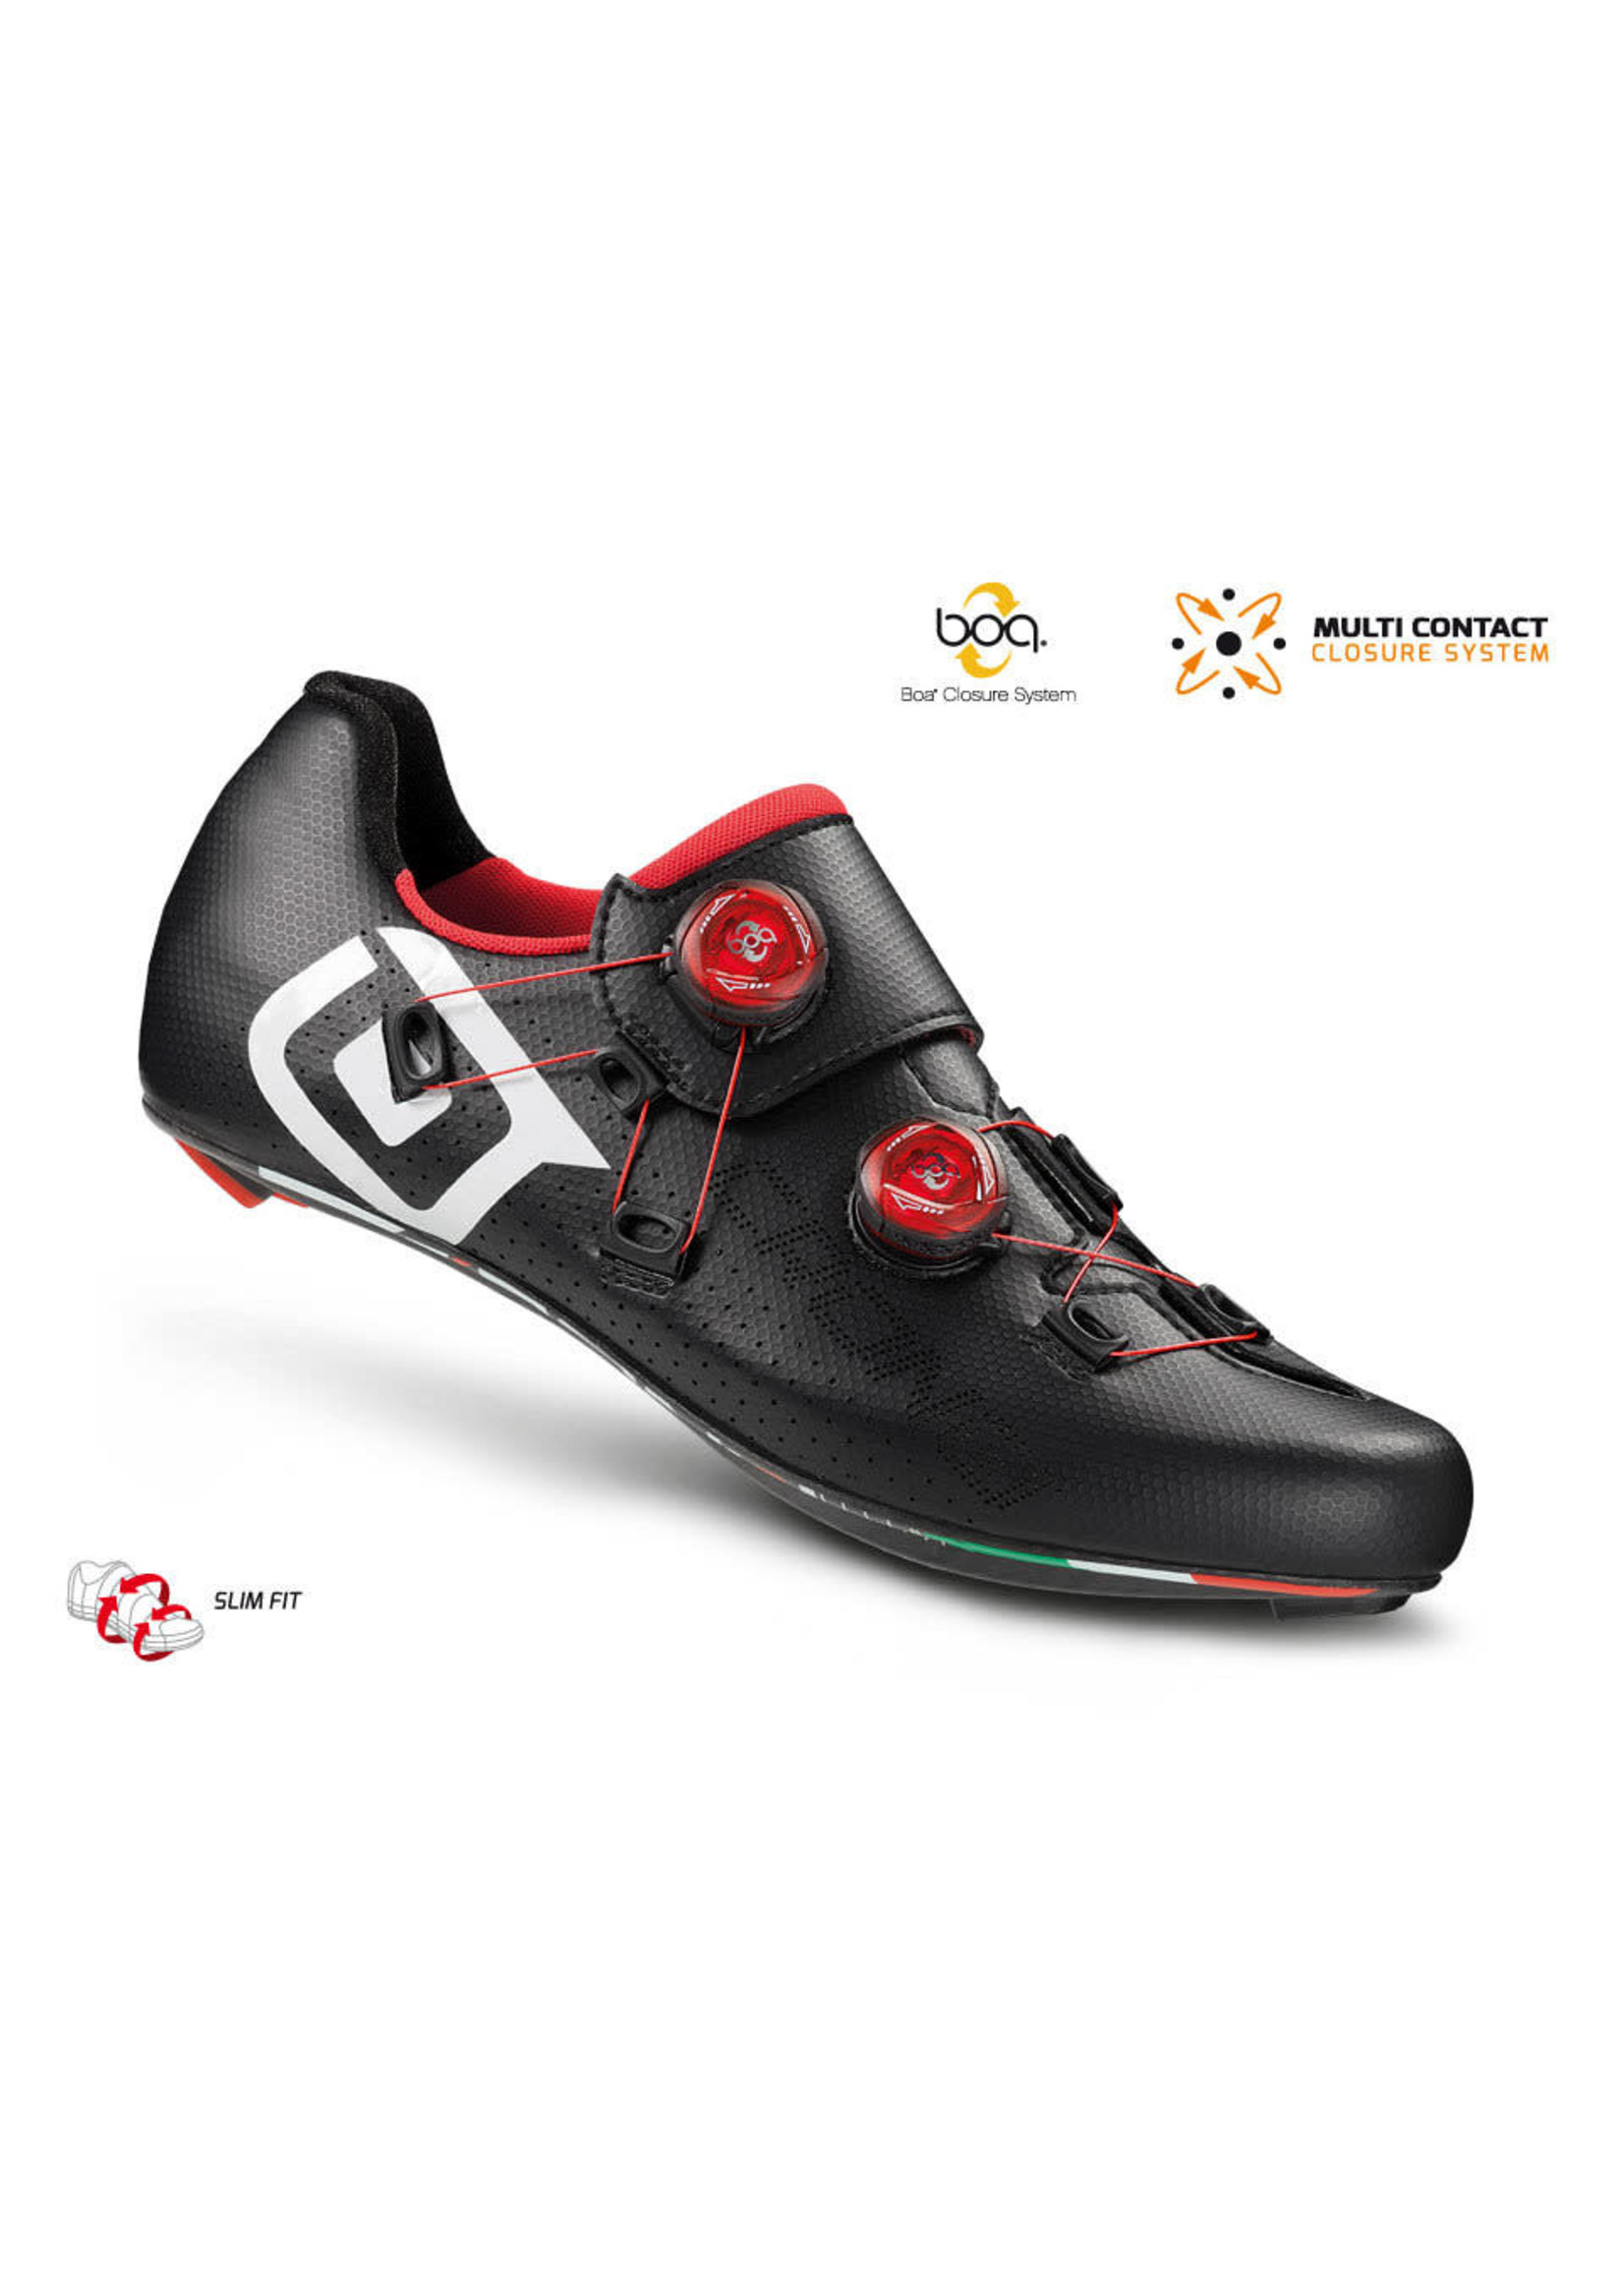 Crono Crono CR1 Carbon Road Shoes